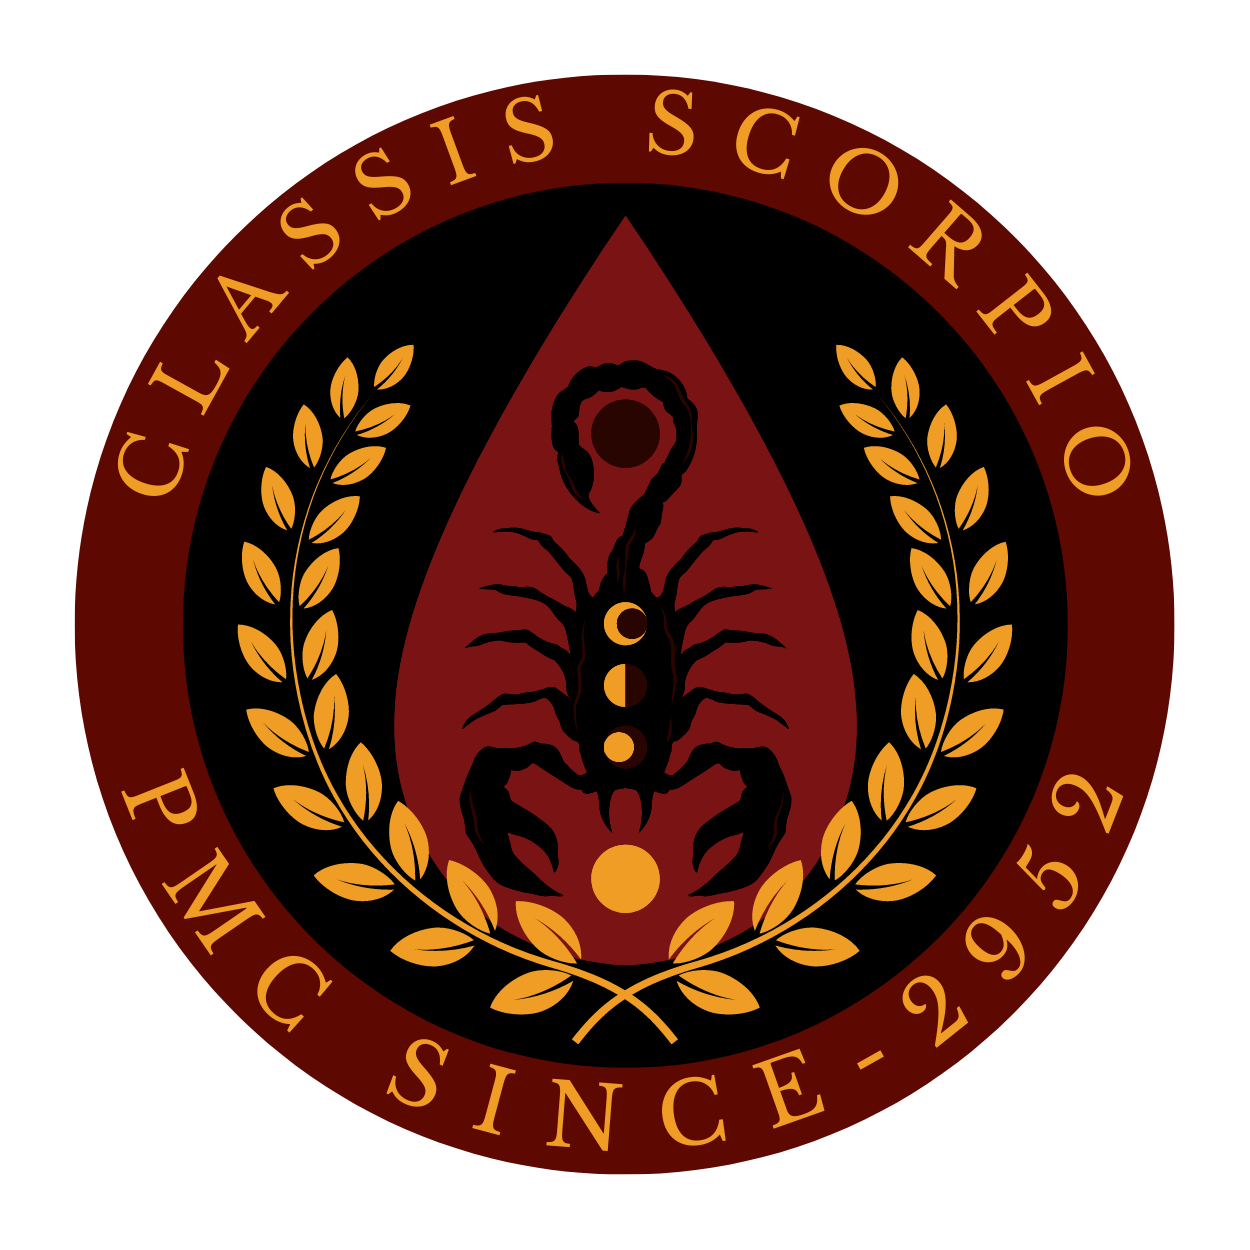 Logo classis scorpio